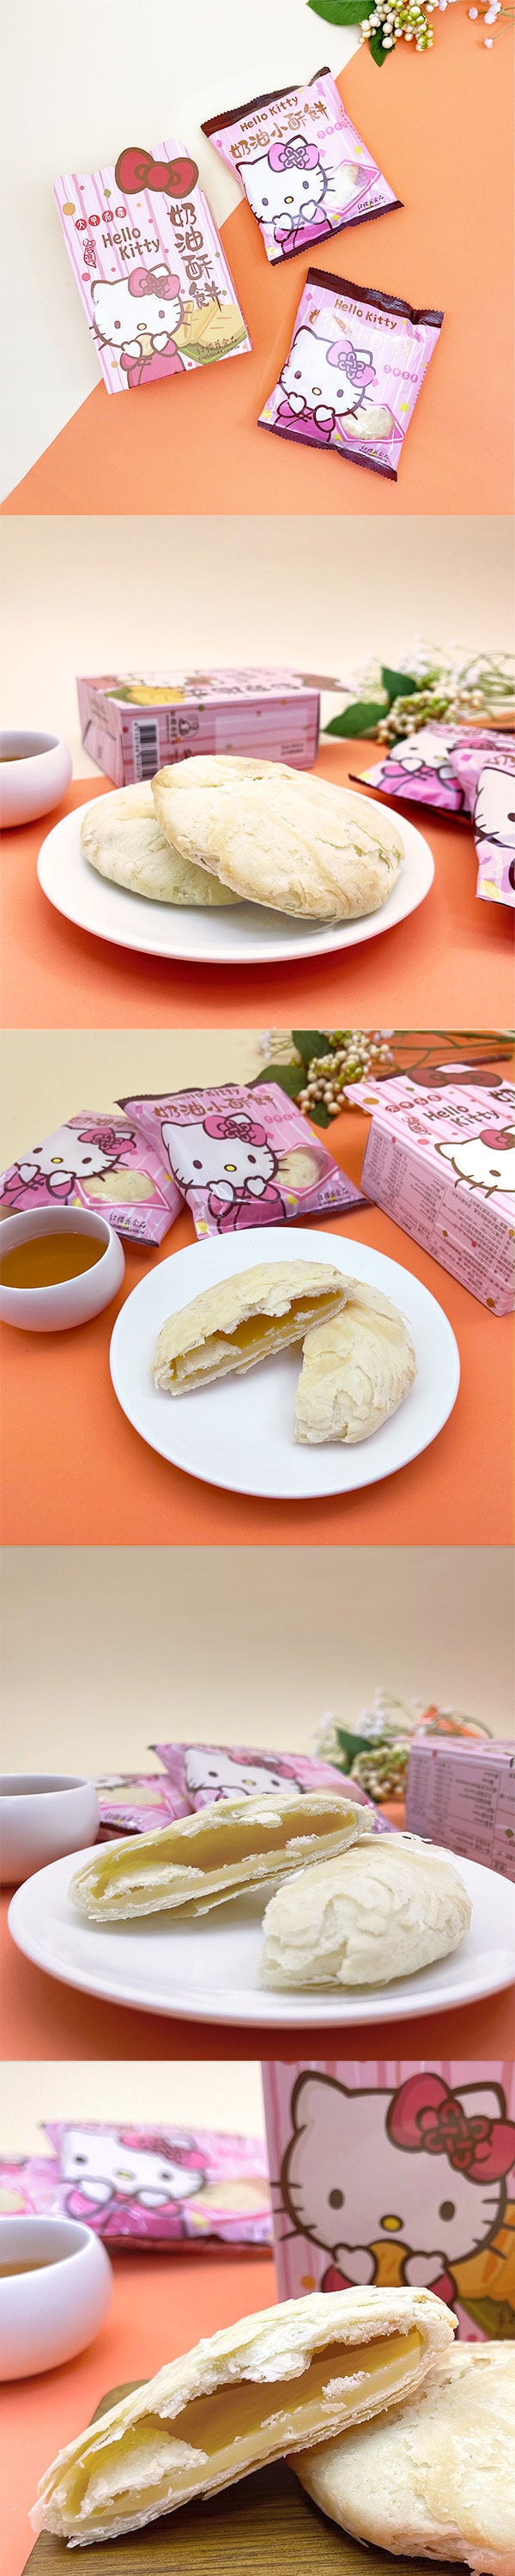 [台湾直邮] 红樱花 Hello Kitty 奶油酥饼随身盒 130g (2入/盒)